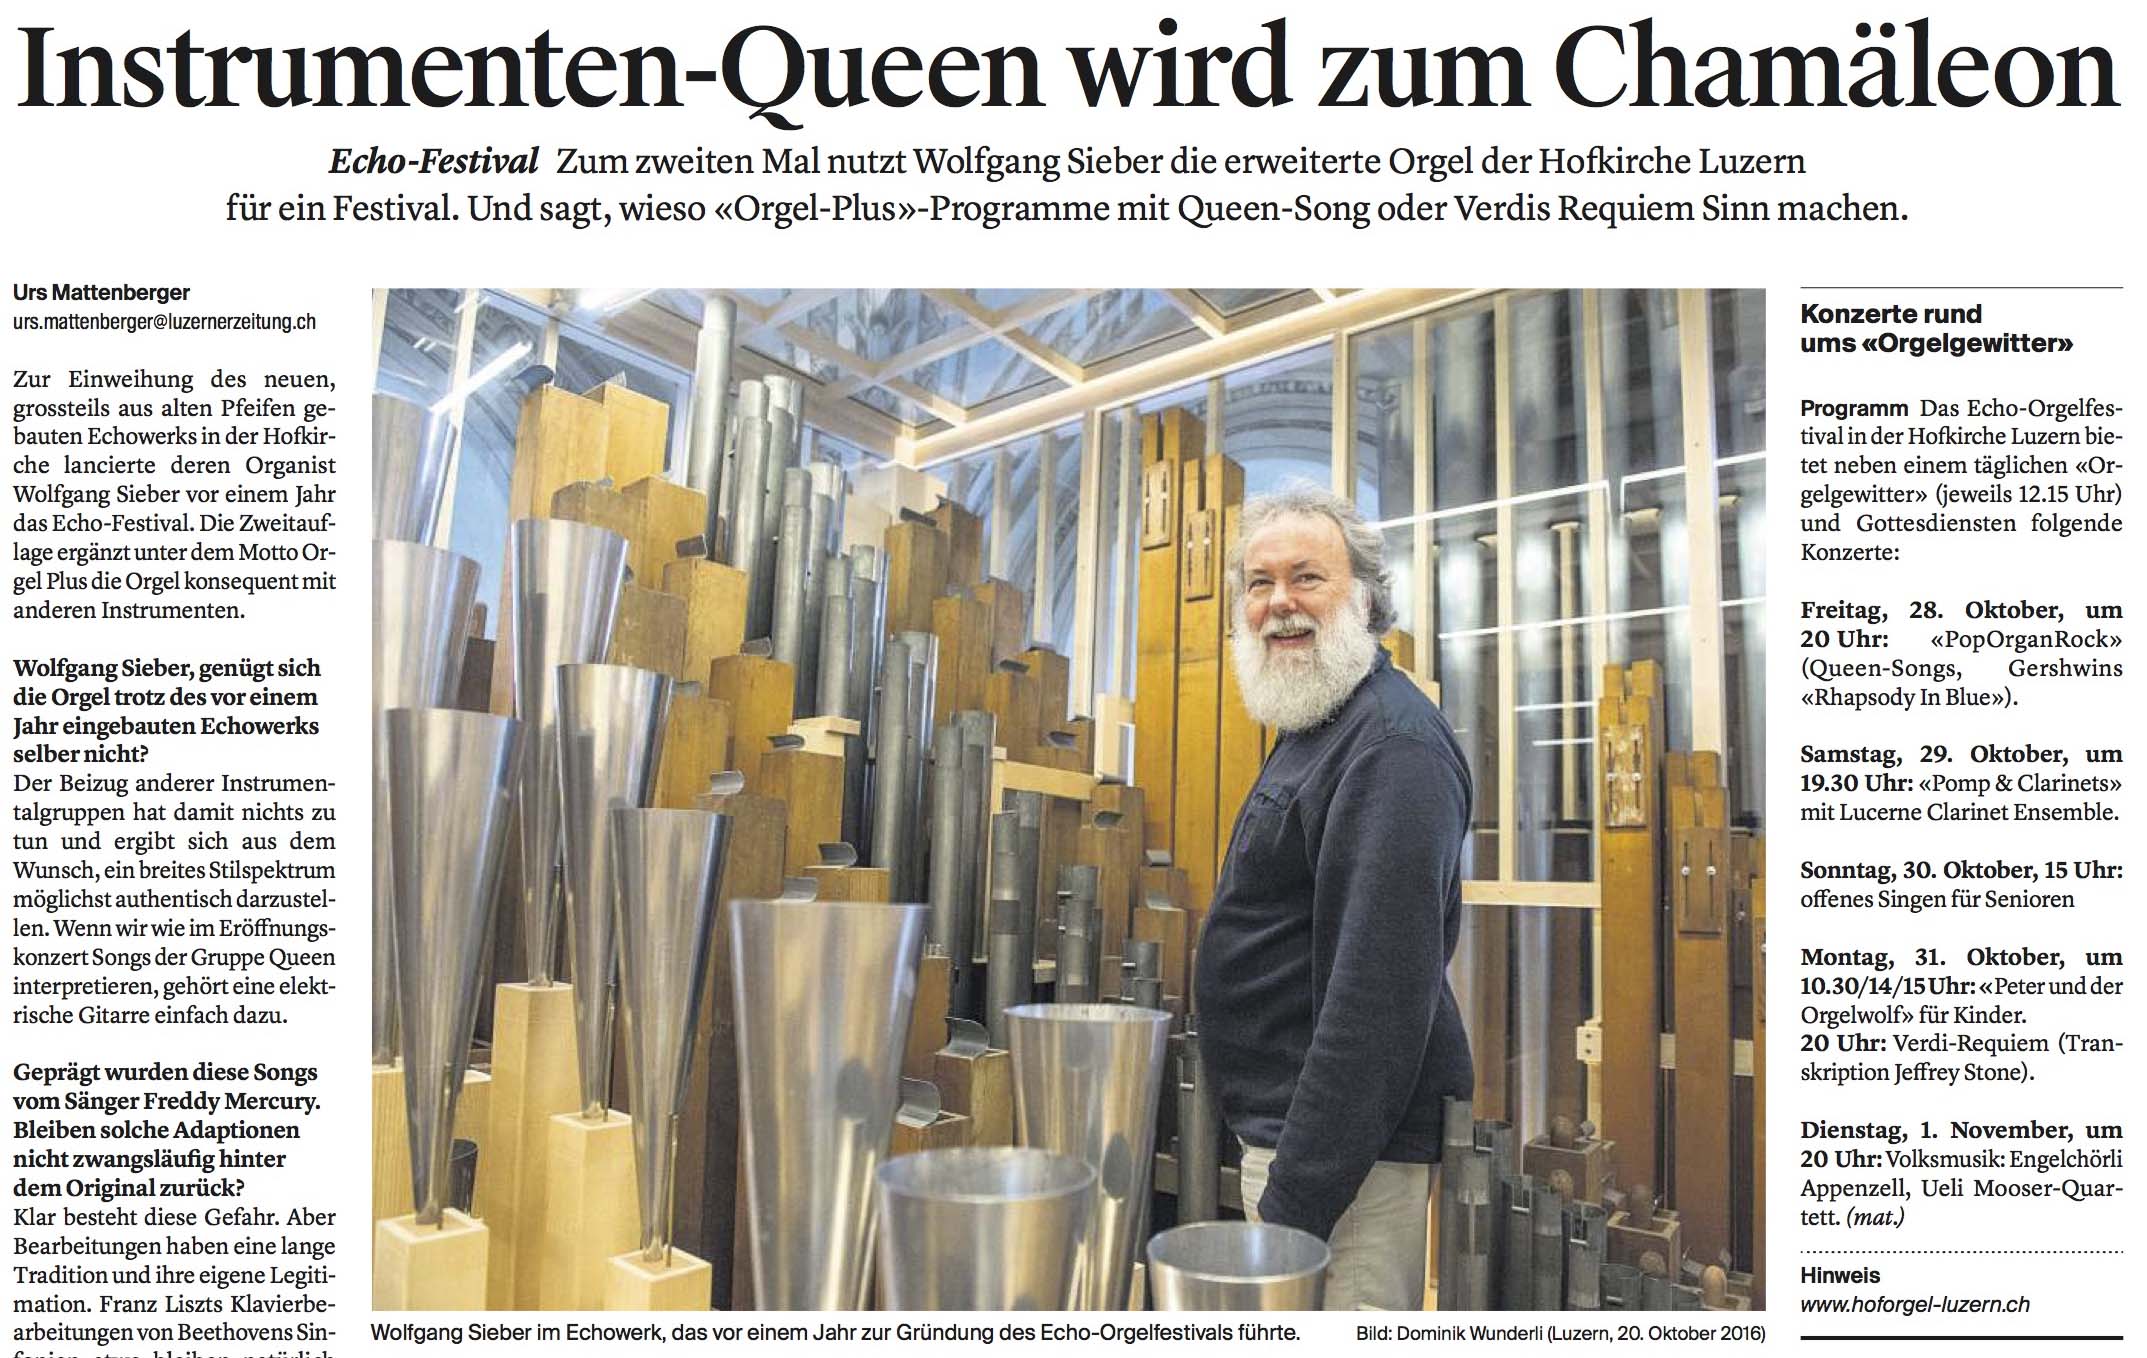 Luzerner Zeitung, 25.10.2016